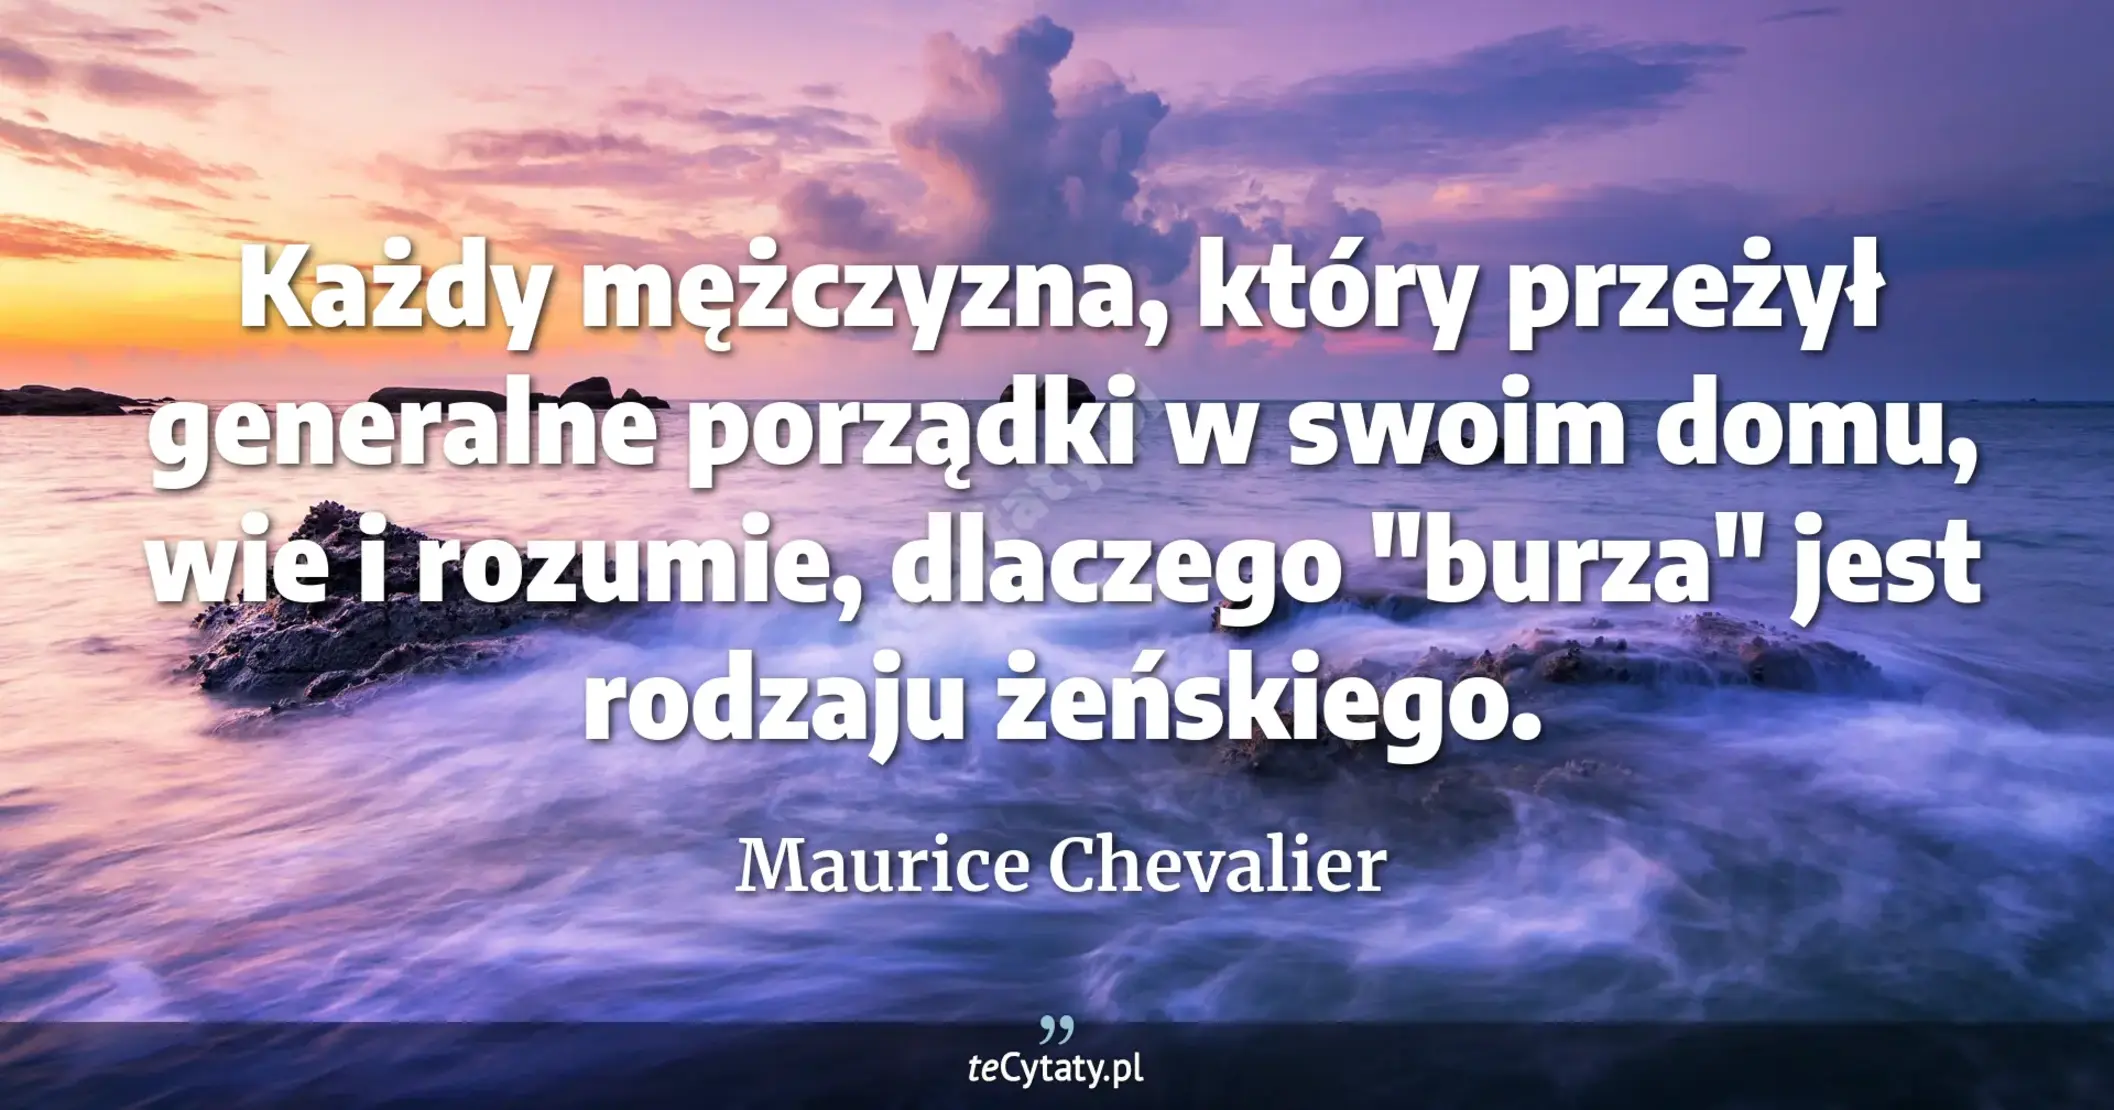 Każdy mężczyzna, który przeżył generalne porządki w swoim domu, wie i rozumie, dlaczego "burza" jest rodzaju żeńskiego. - Maurice Chevalier